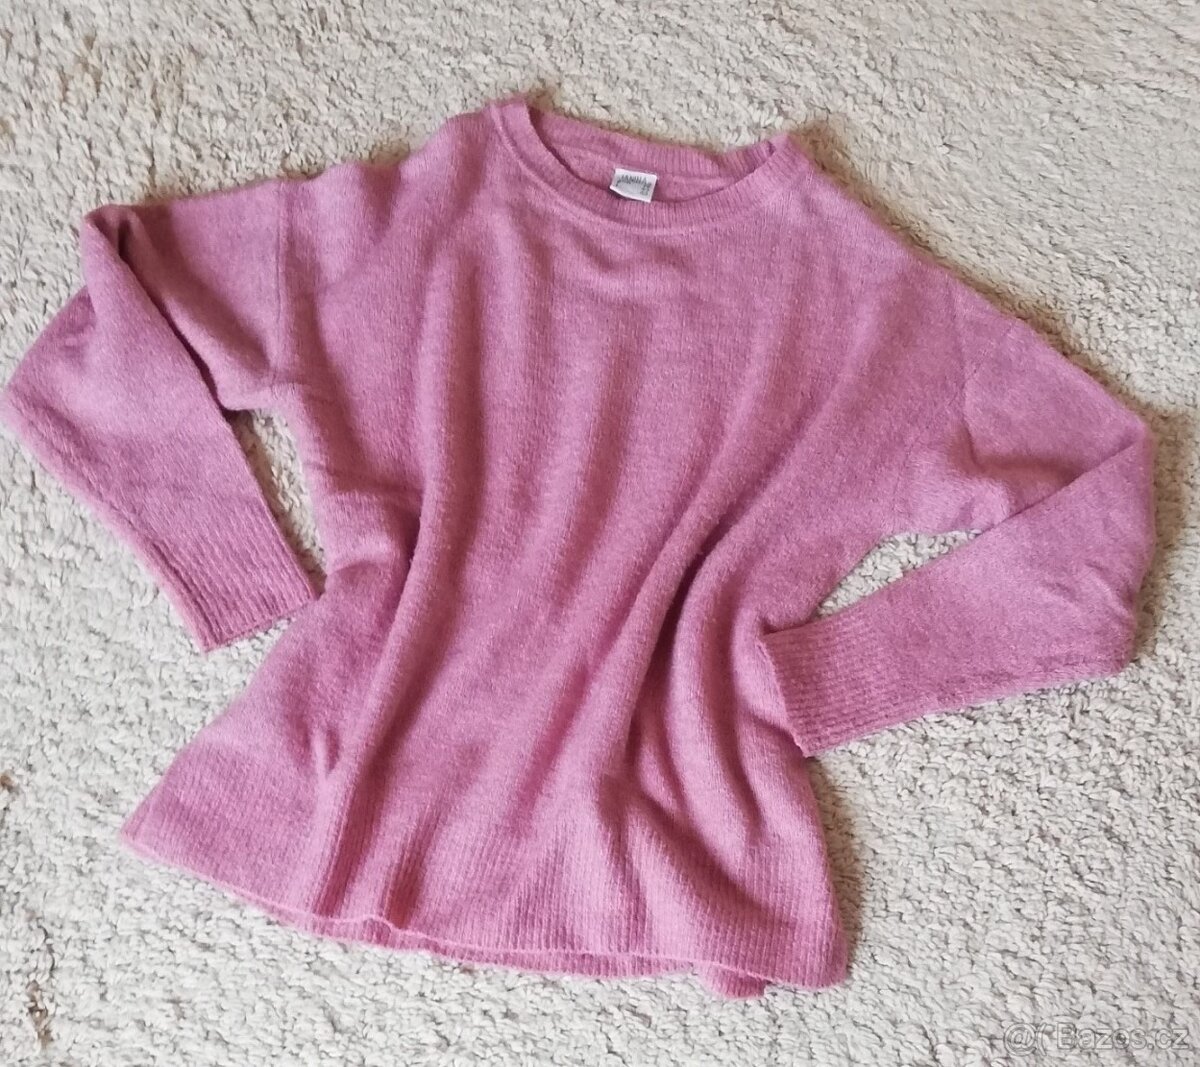 Dámský svetřík, svetr, vel. 40, růžová, minimálně nošený